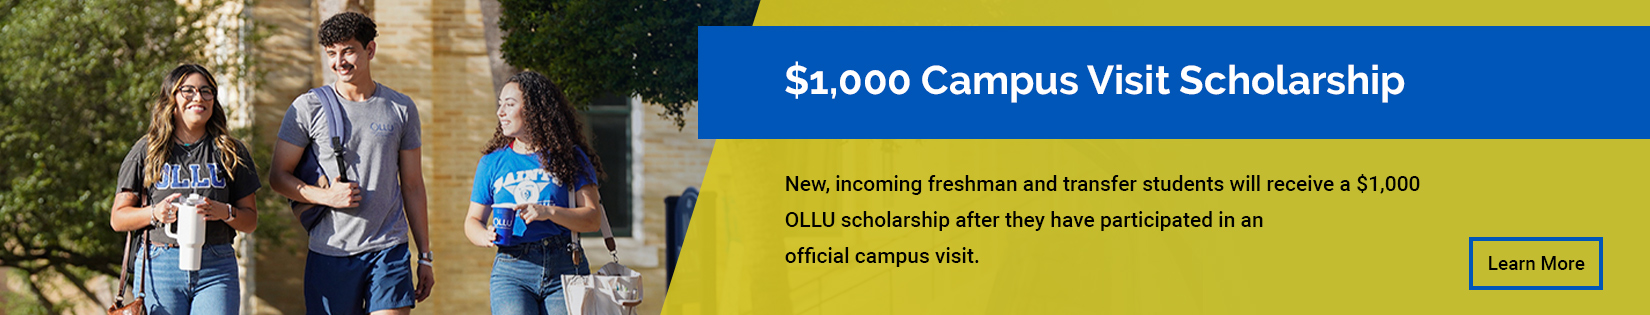 $1,000 Campus Visit Scholarship